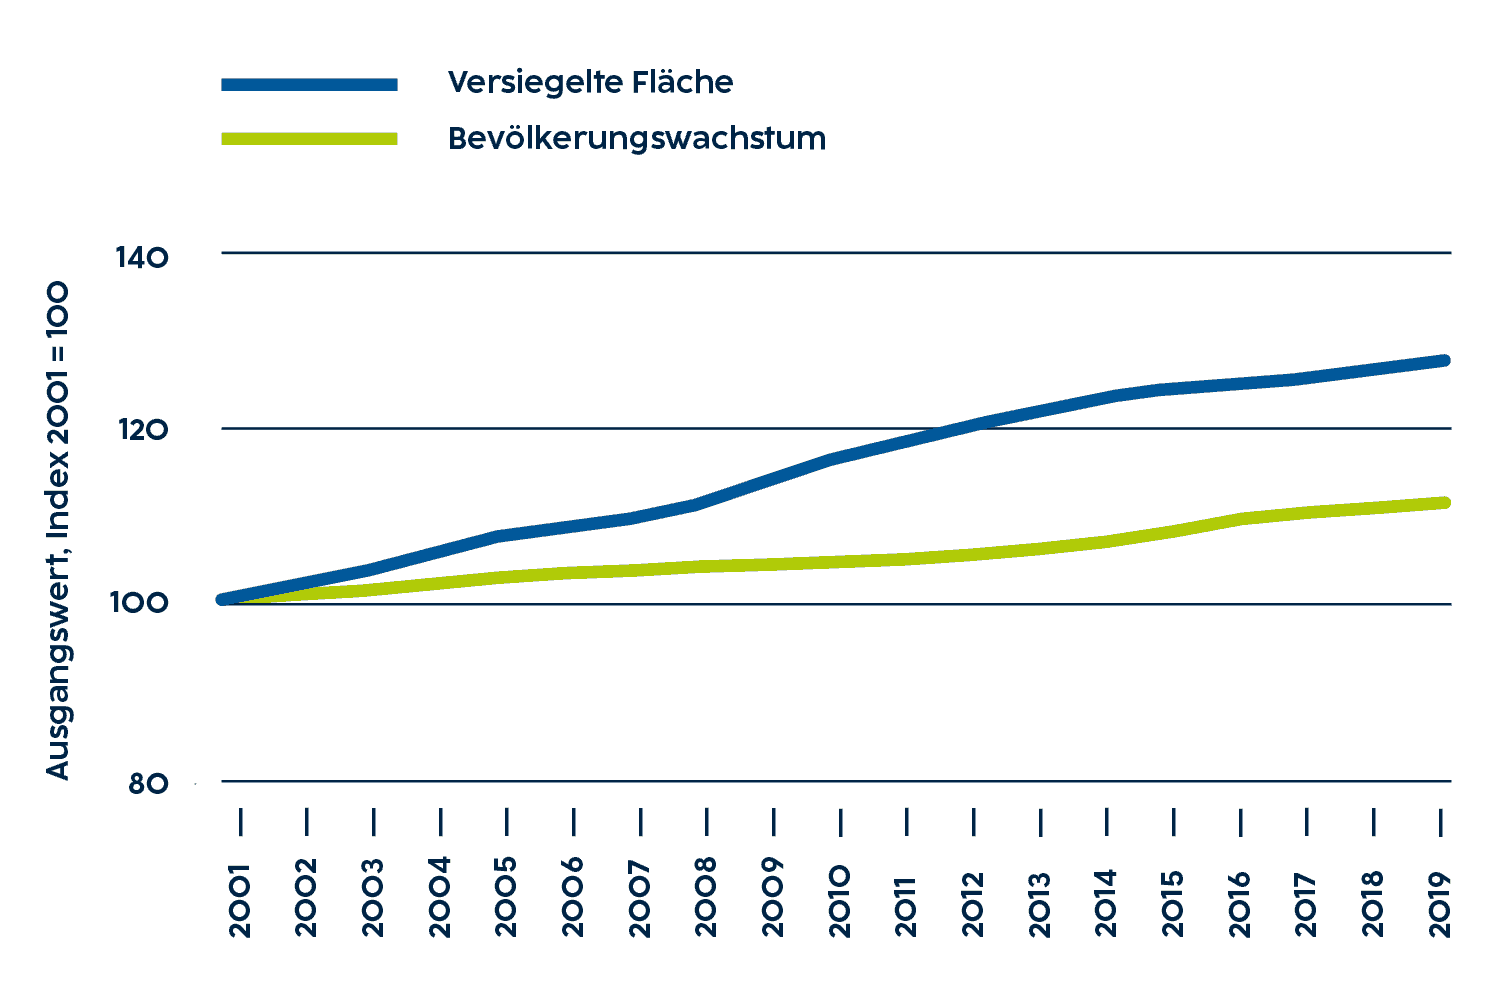 Die Grafik zeigt die Entwicklung von versiegelter Fläche und Bevölkerung in Österreich seit 2001. Die Flächenversiegelung wuchs mit 25,7% im gesamten Beobachtungszeitraum deutlich schneller als die österreichische Bevölkerung.